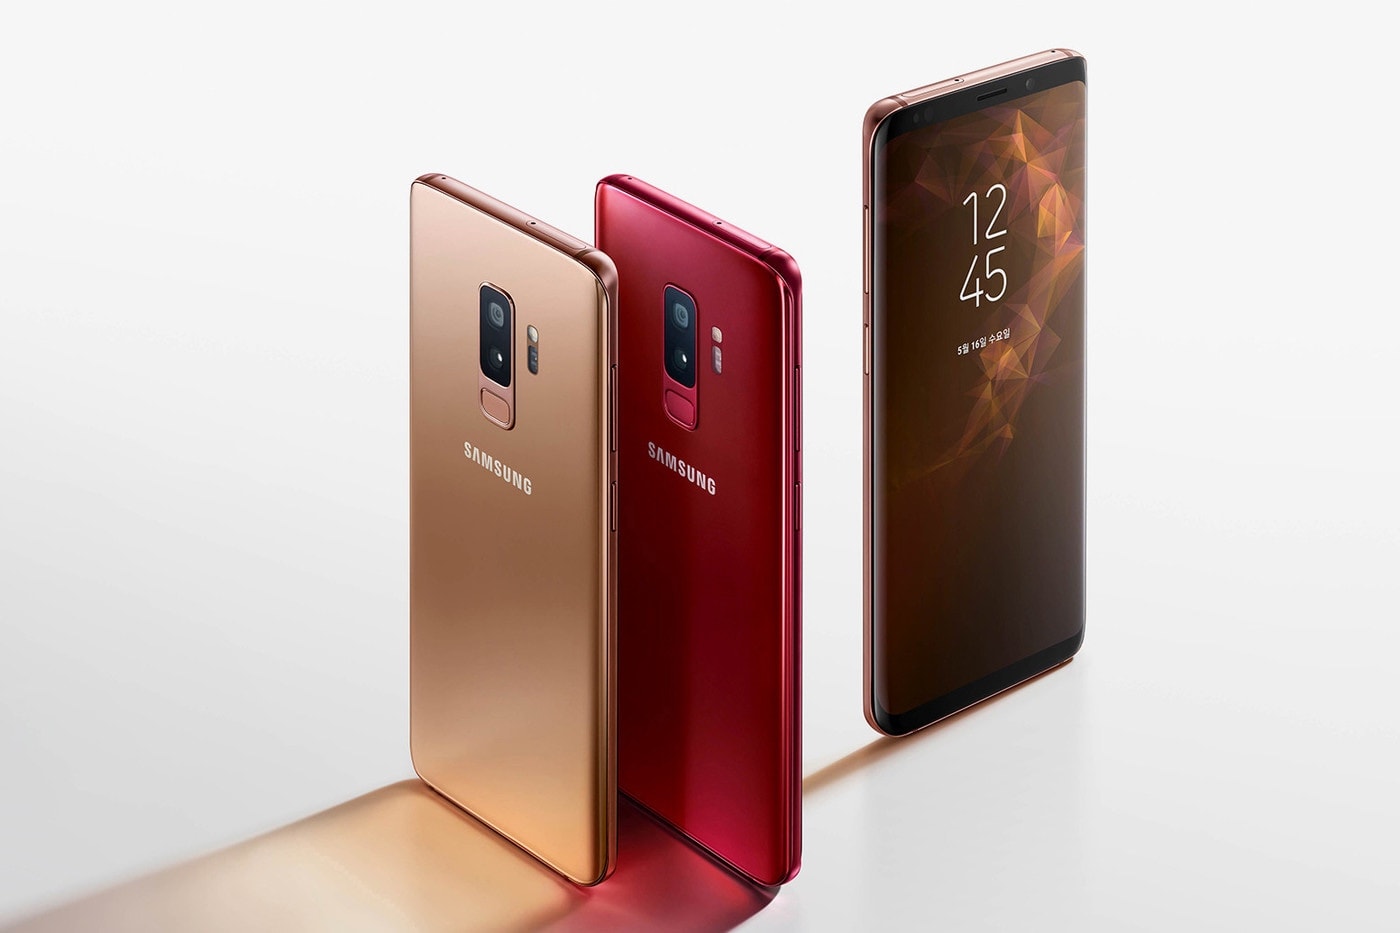 Samsung 預計於 2019 年推出支援 5G 智慧型手機